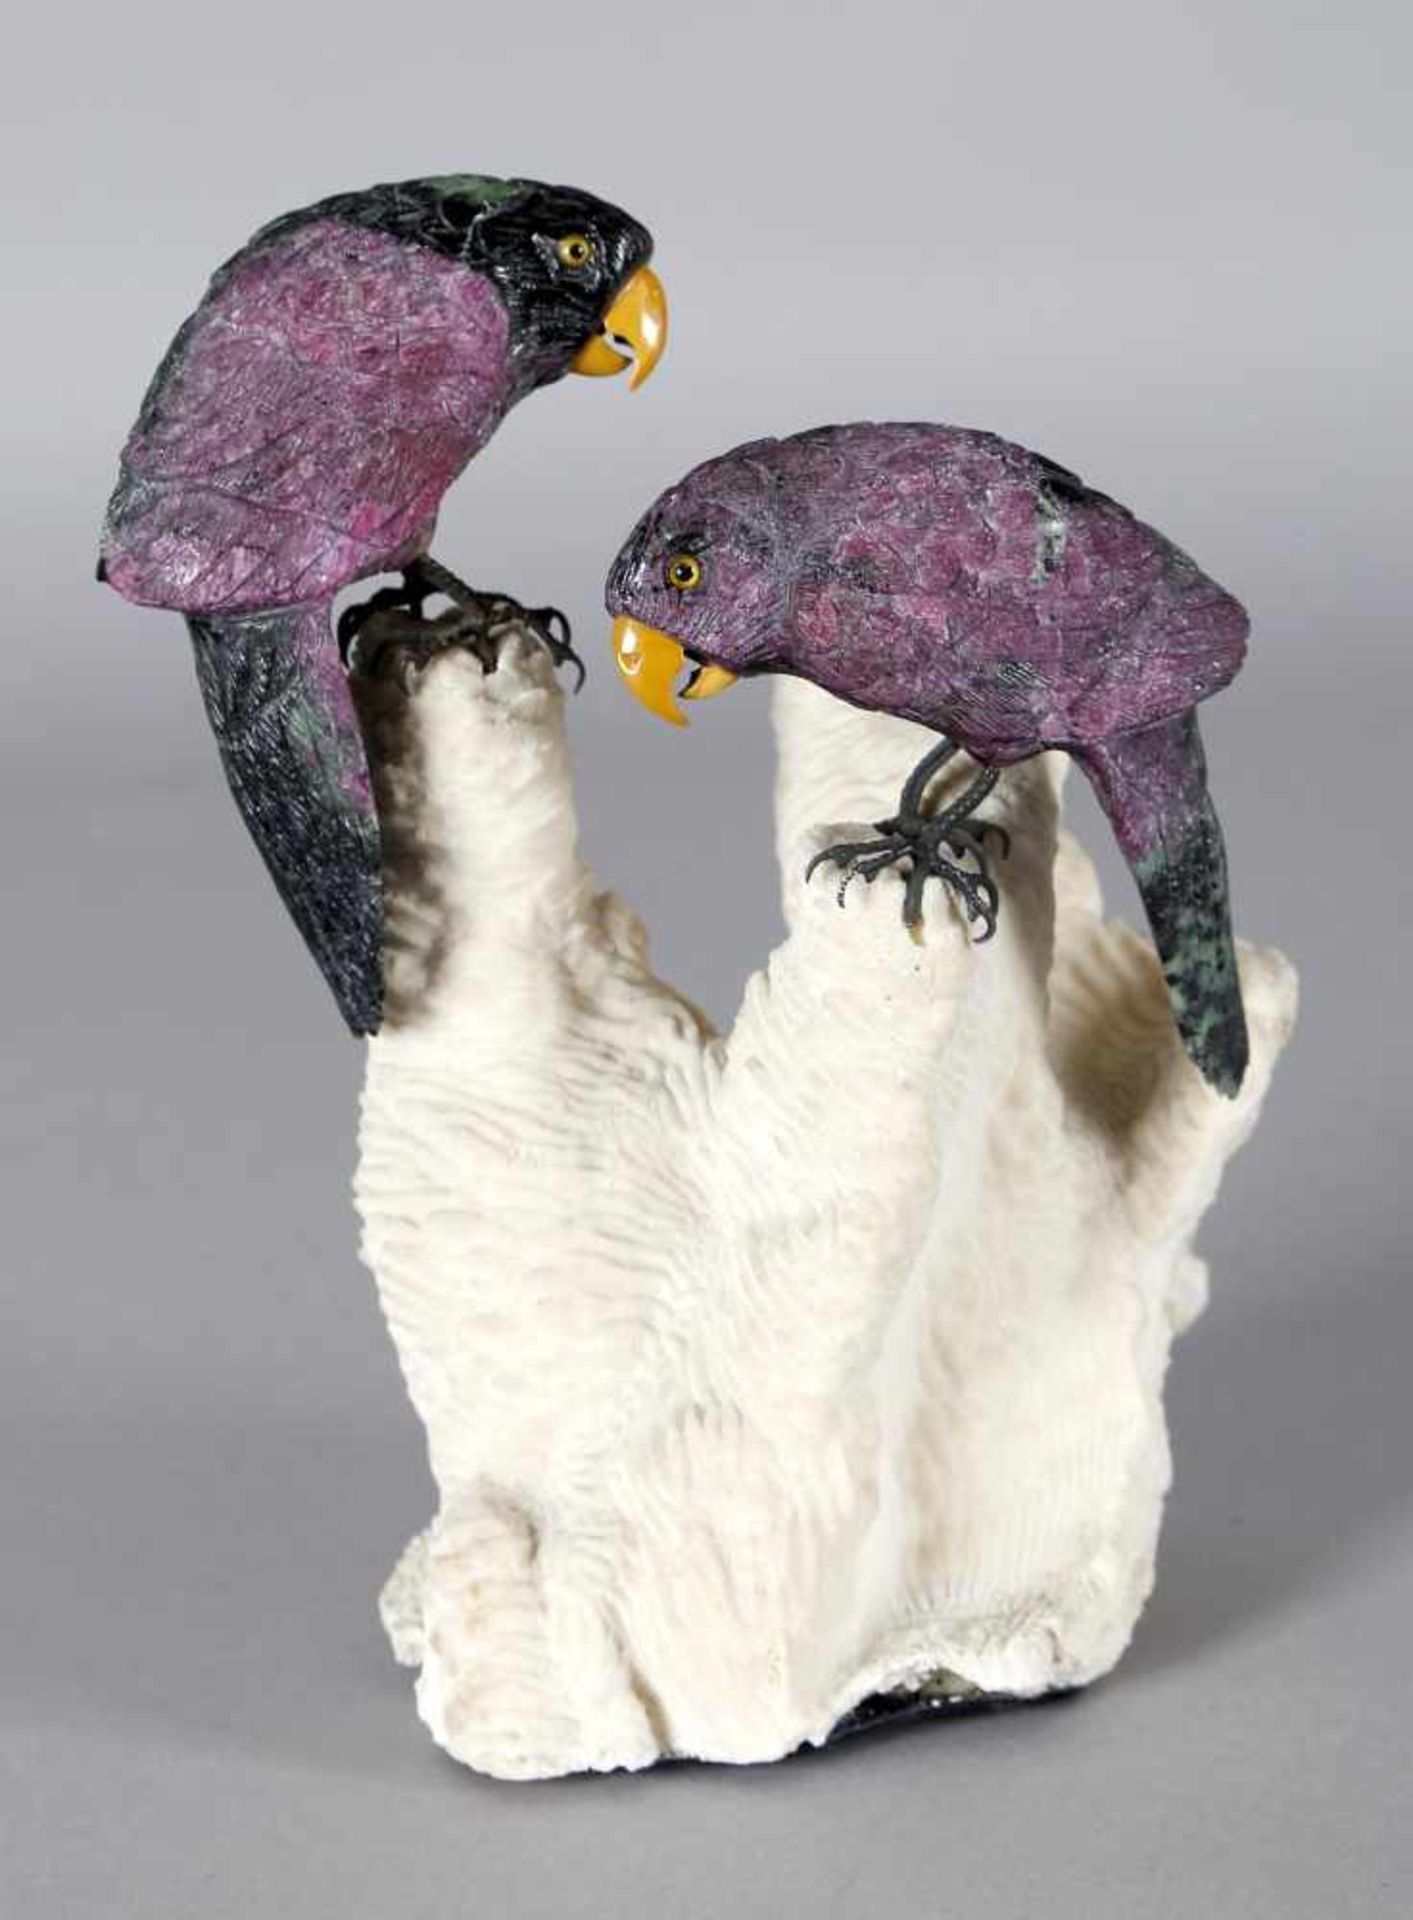 Beeindruckendes Papageienpaar aus Rubin und Zoisit auf Koralle, wohl alte Idar-Obersteiner